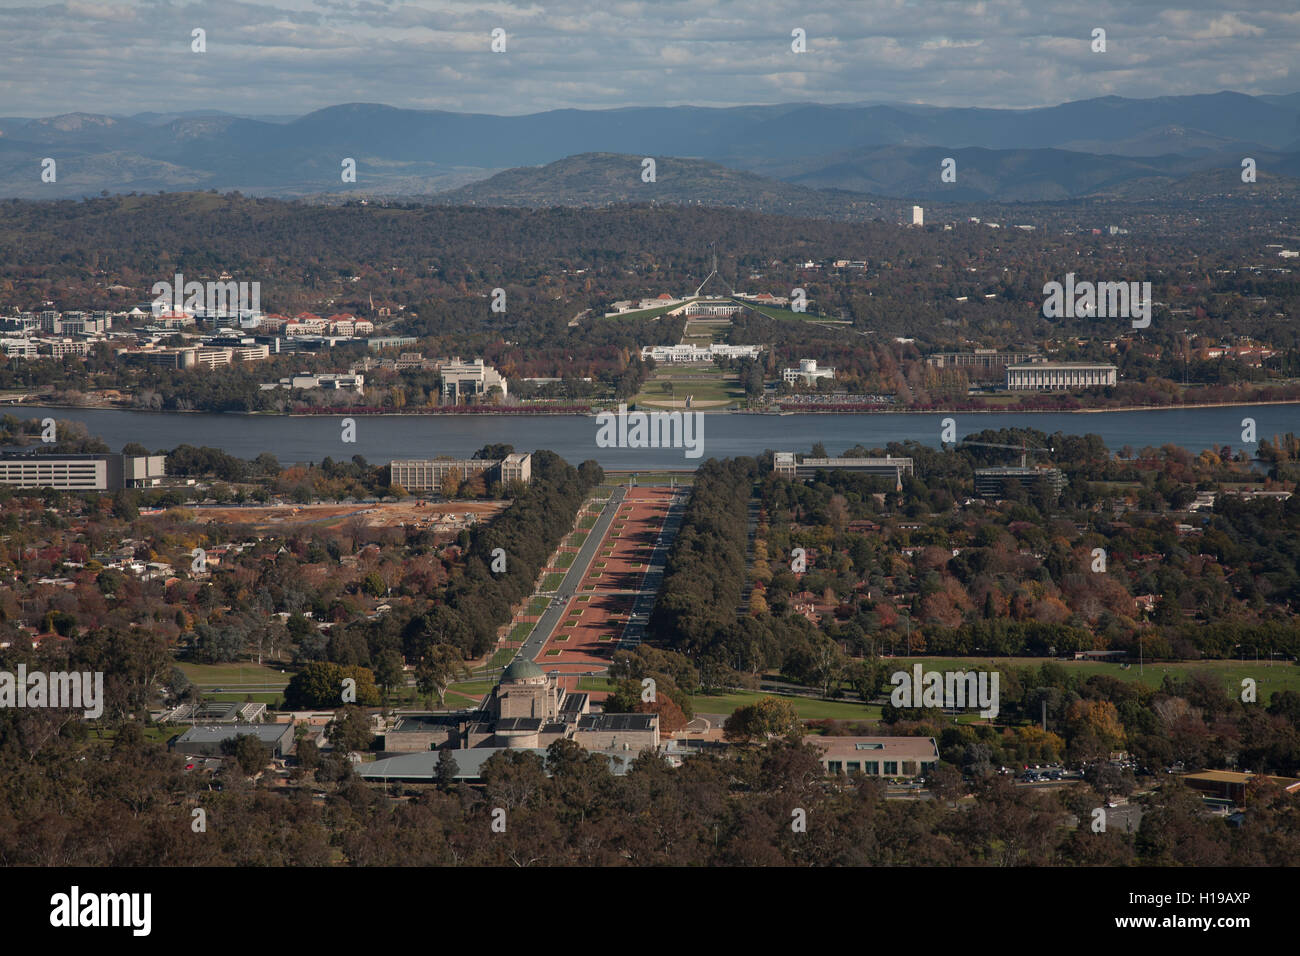 Luftaufnahme von Canberra vom Mount Ainslie Lookout Canberra Australien. Stockfoto